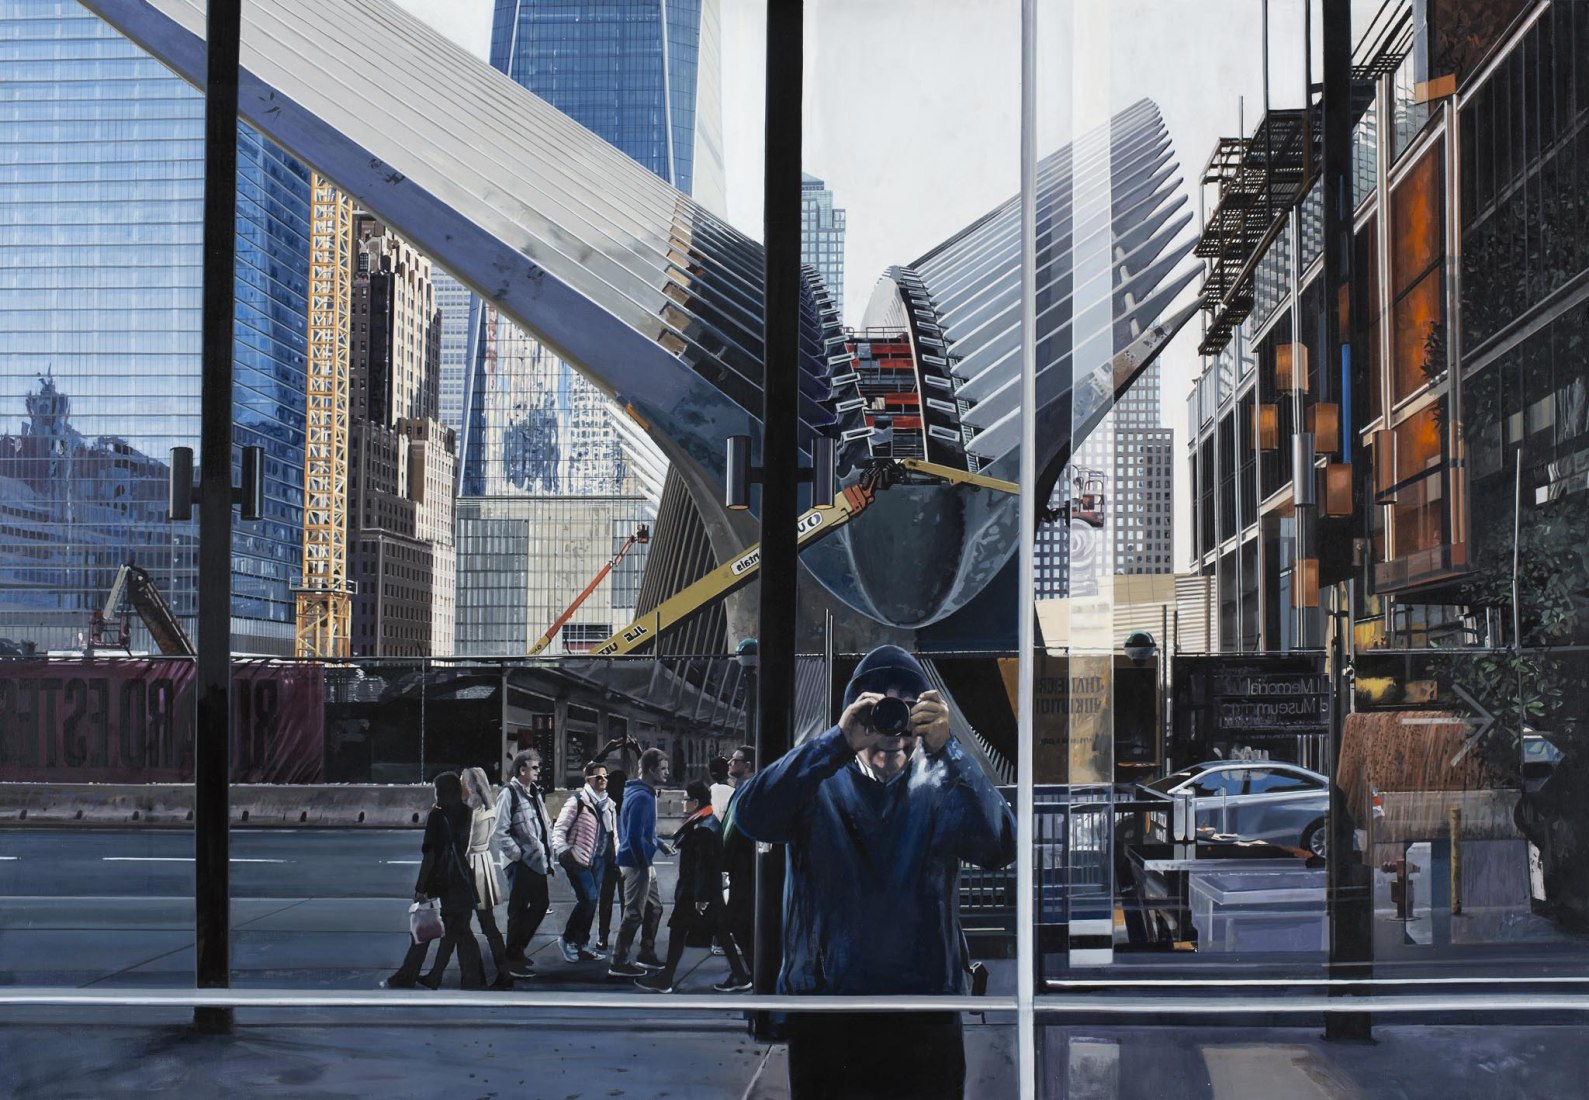 Autorretrato cerca del Oculus en el World Trade Center, 2017. Óleo sobre lienzo, 96,5 x 139,7 cm © Richard Estes, cortesía de Marlborough Gallery, Nueva York, 2015. Image courtesy of Museo Nacional Thyssen-Bornemisza